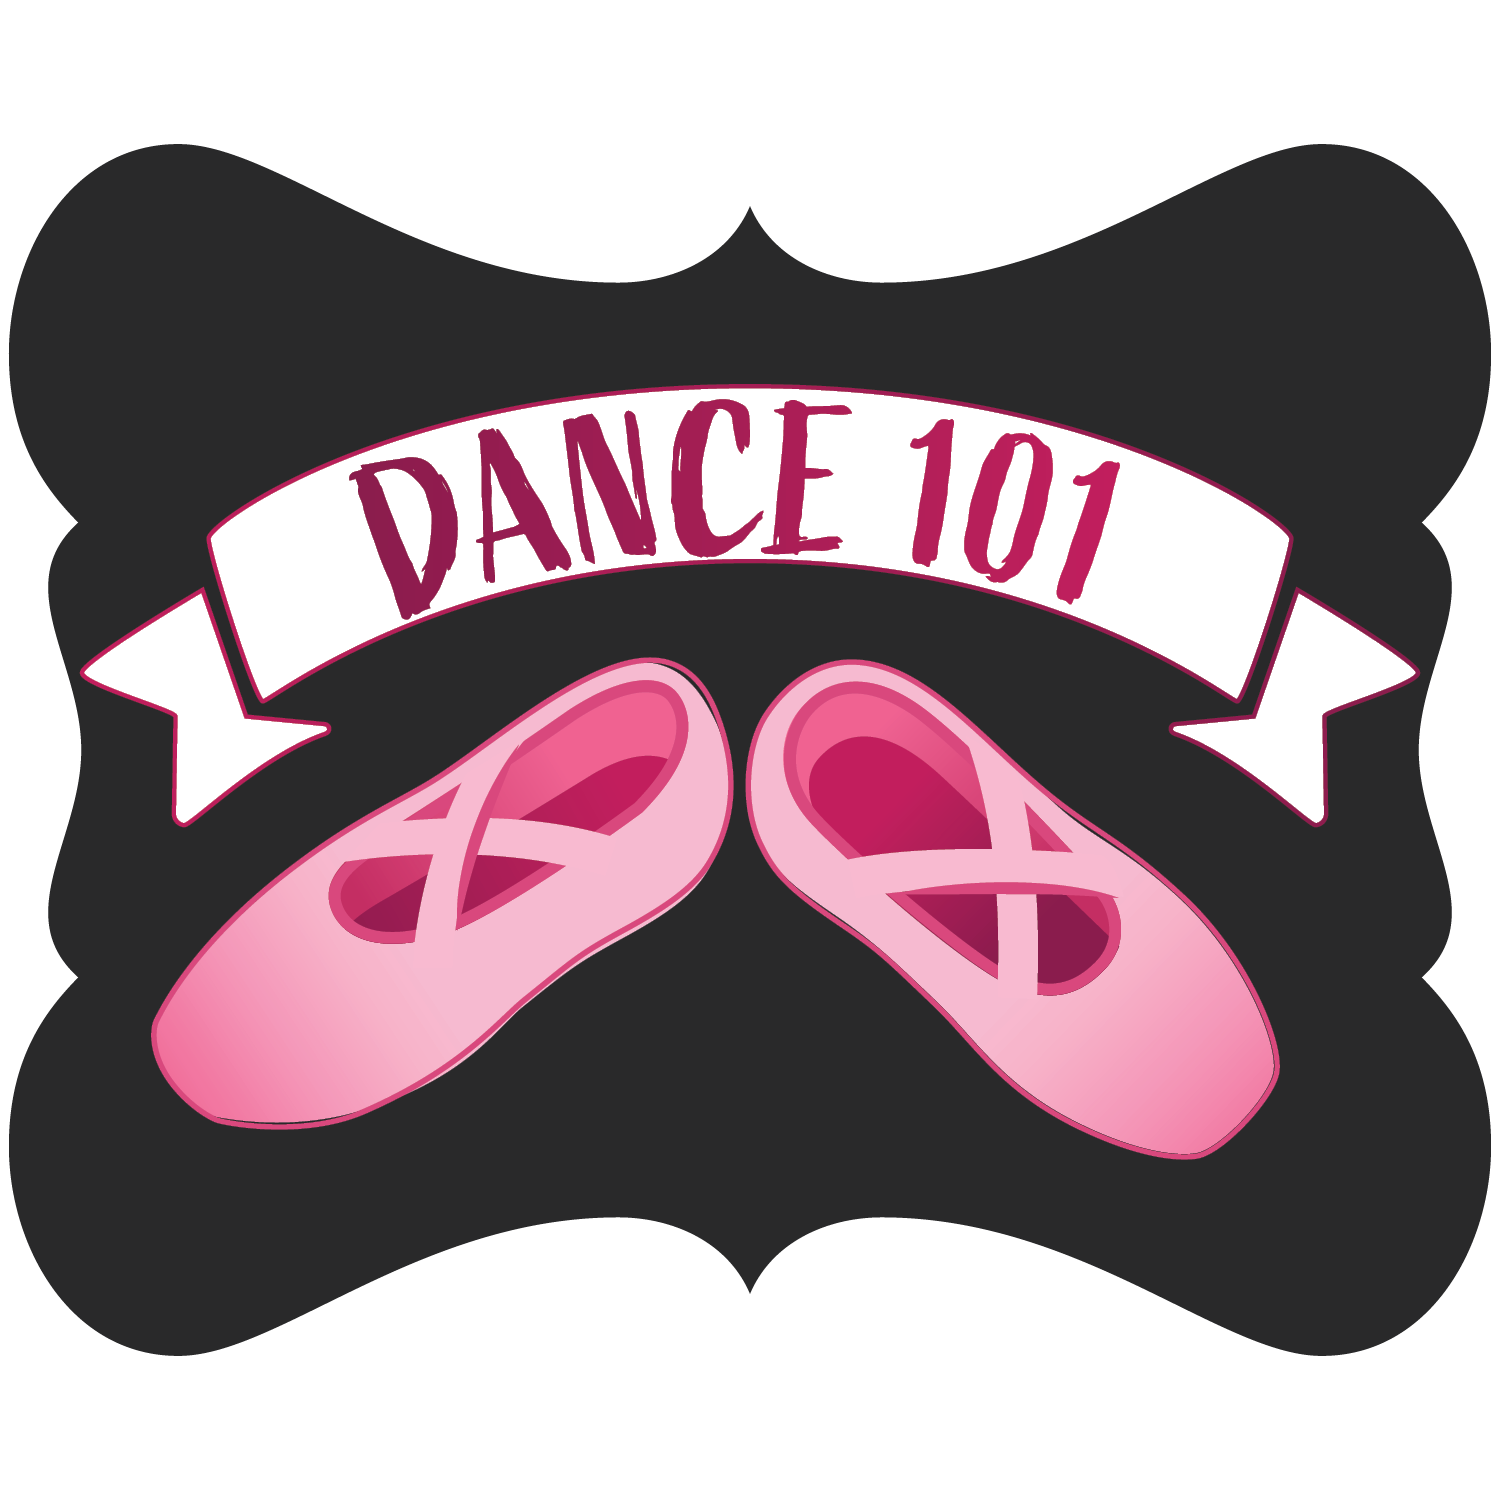 Dance 101